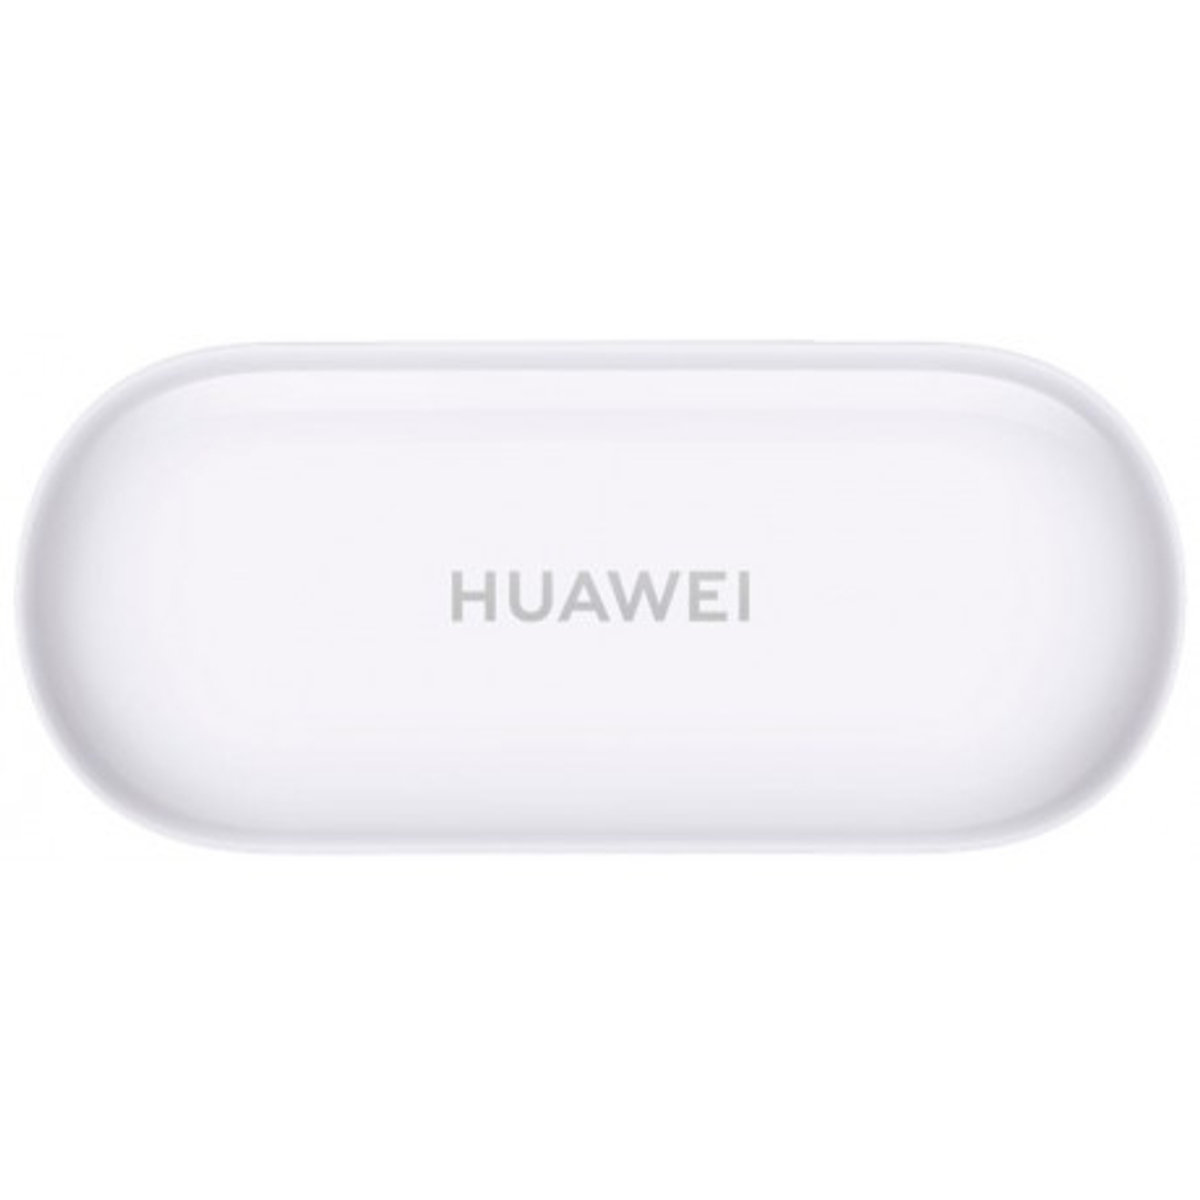 HUAWEI Freebuds Kopfhörer Bluetooth weiß 3i, In-ear